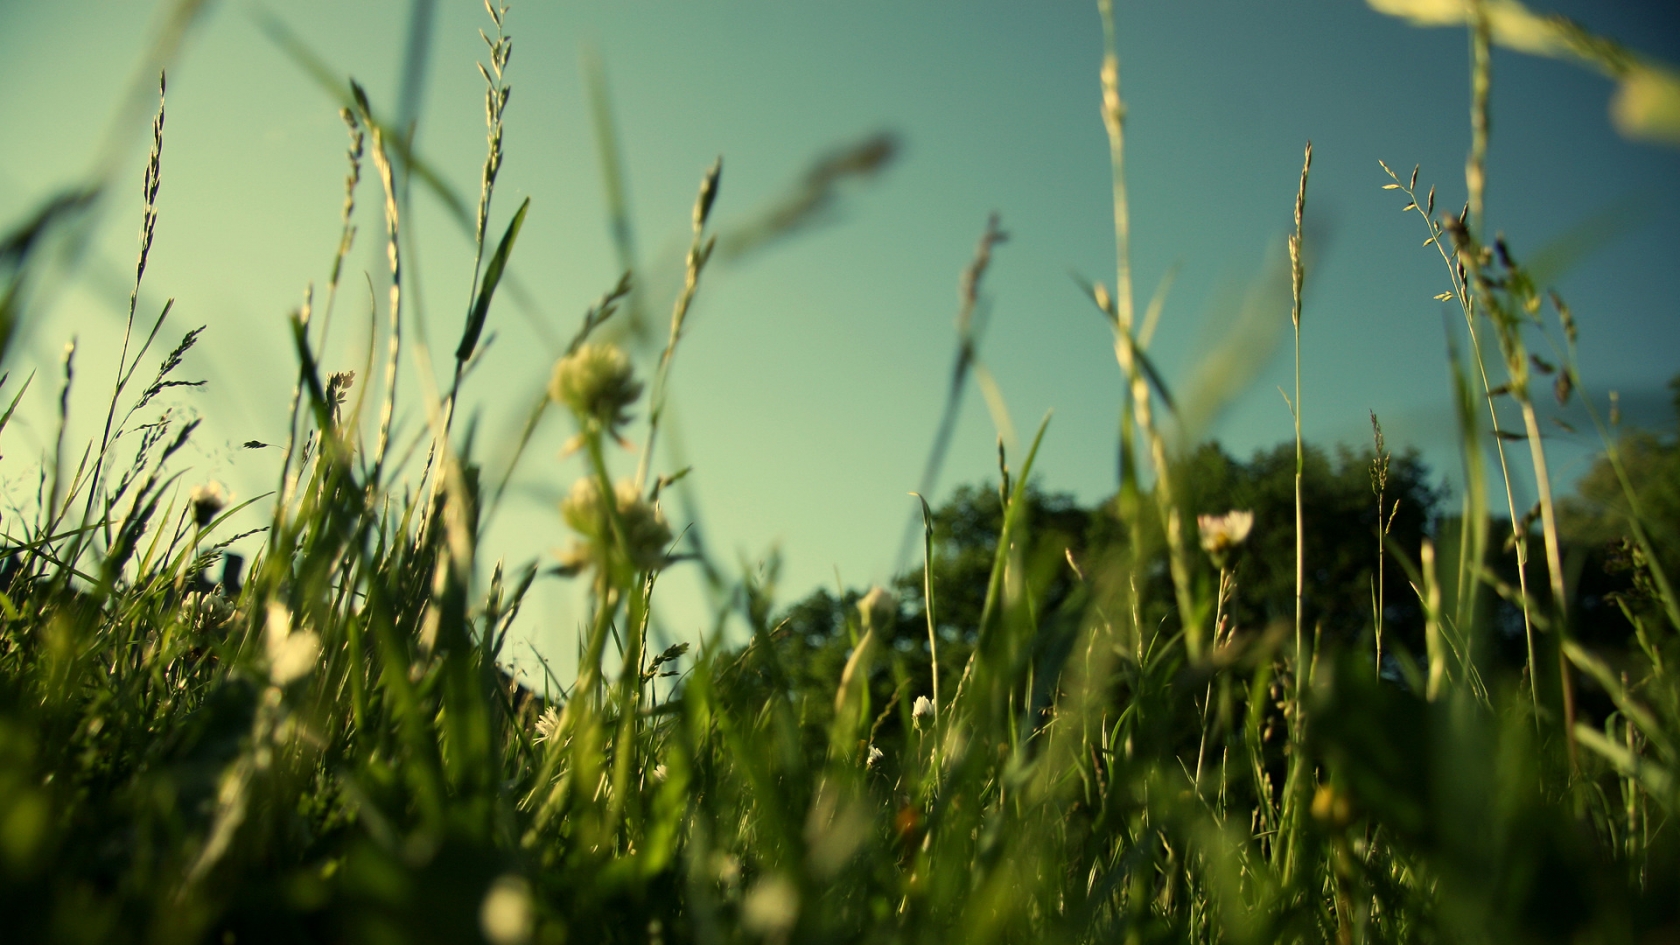 Evening Grass for 1680 x 945 HDTV resolution